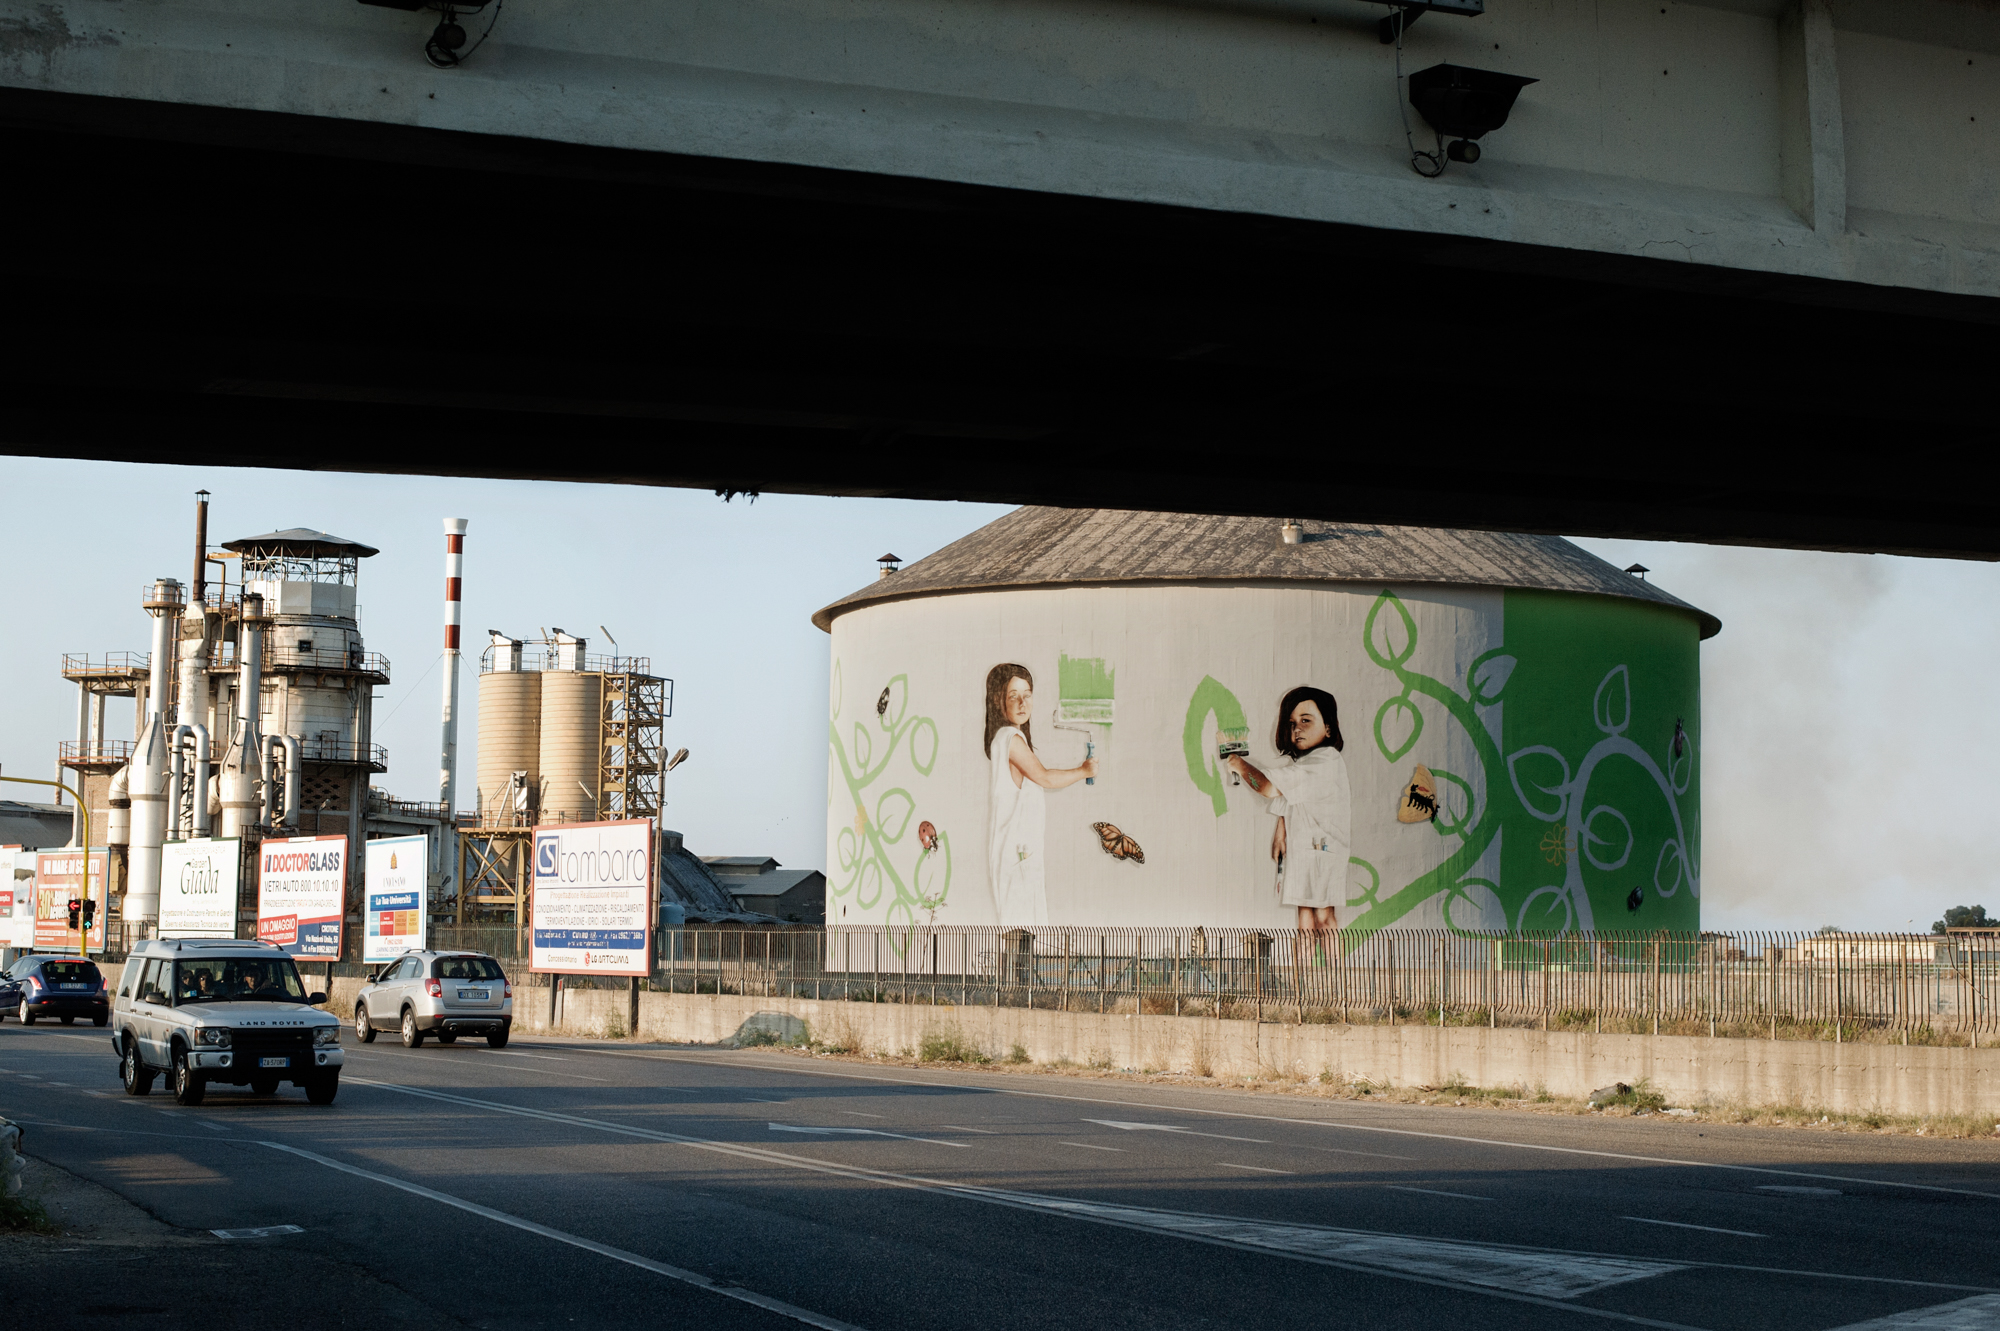  Italia. Crotone 2013: Il silos della Pertusola Sud coperto da un murales commissionato dall'Eni, che dirige la bonifica della zona industriale.&nbsp; 